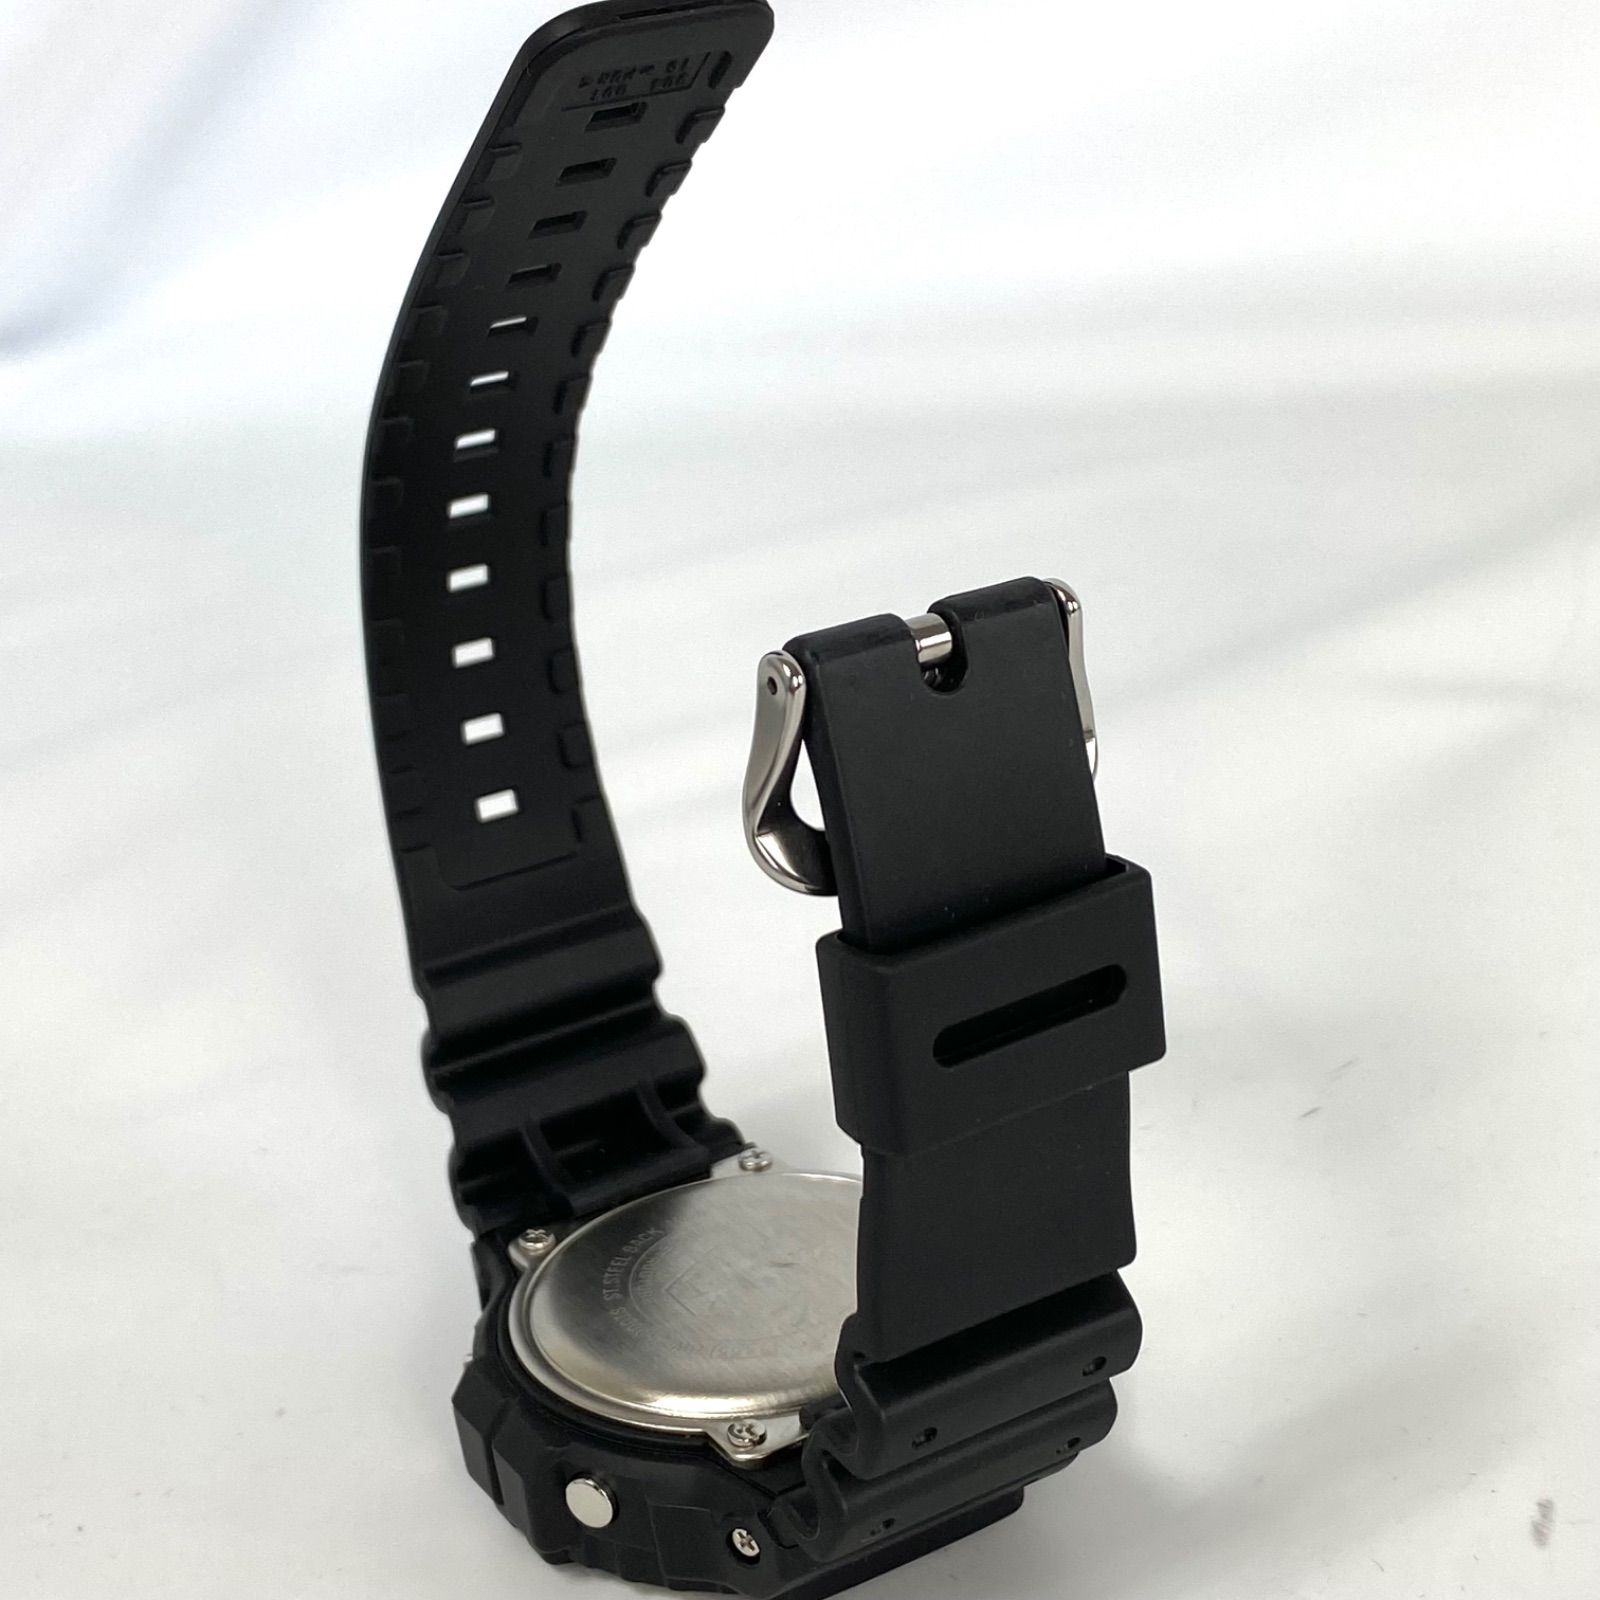 ジーショック G-SHOCK 腕時計 デジタル DW-5900TS-1JF 黒